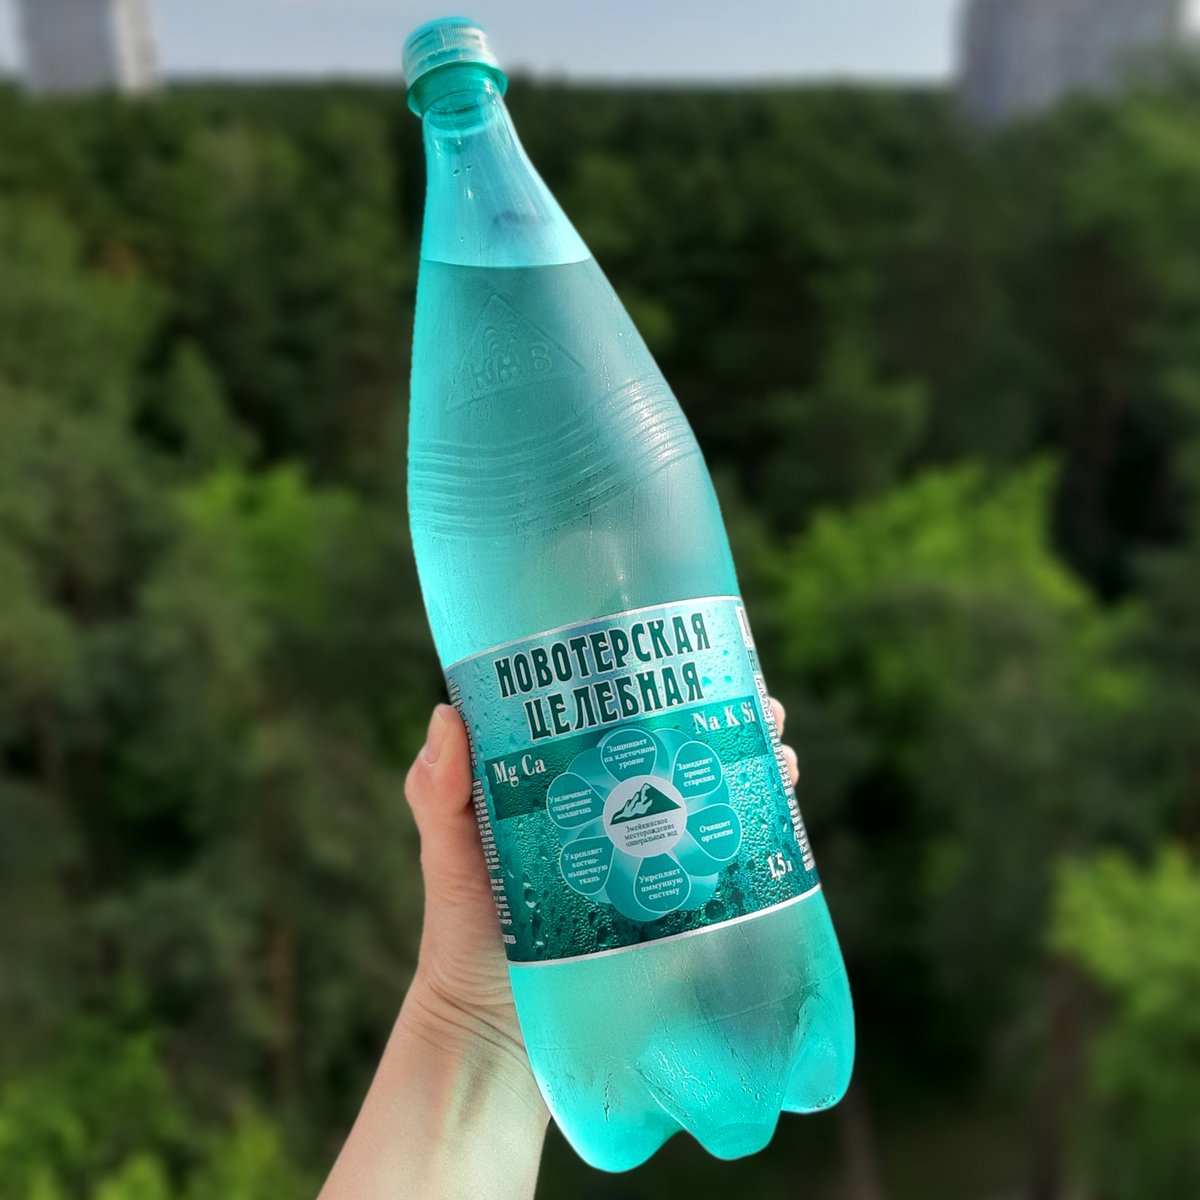 Вода минеральная вода Новотерская